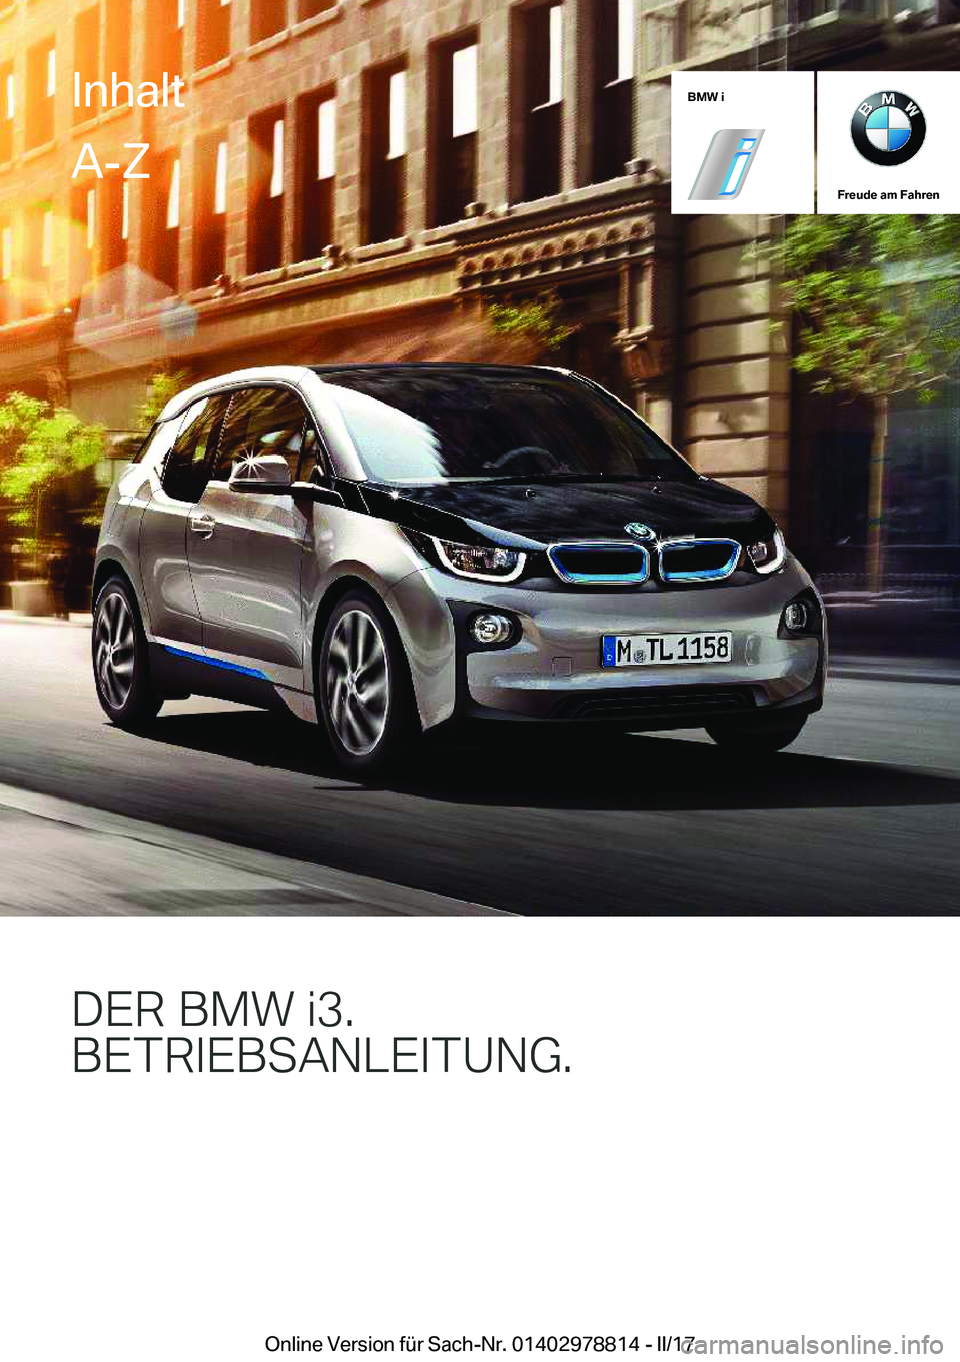 BMW I3 2017  Betriebsanleitungen (in German) �B�M�W��i
�F�r�e�u�d�e��a�m��F�a�h�r�e�n
�D�E�R��B�M�8��J���B�E�T�R�*�E�B�S�A�N�L�E�*�T�U�N�(�
�I�n�h�a�l�t�A�-�Z
�O�n�l�i�n�e� �V�e�r�s�i�o�n� �f�